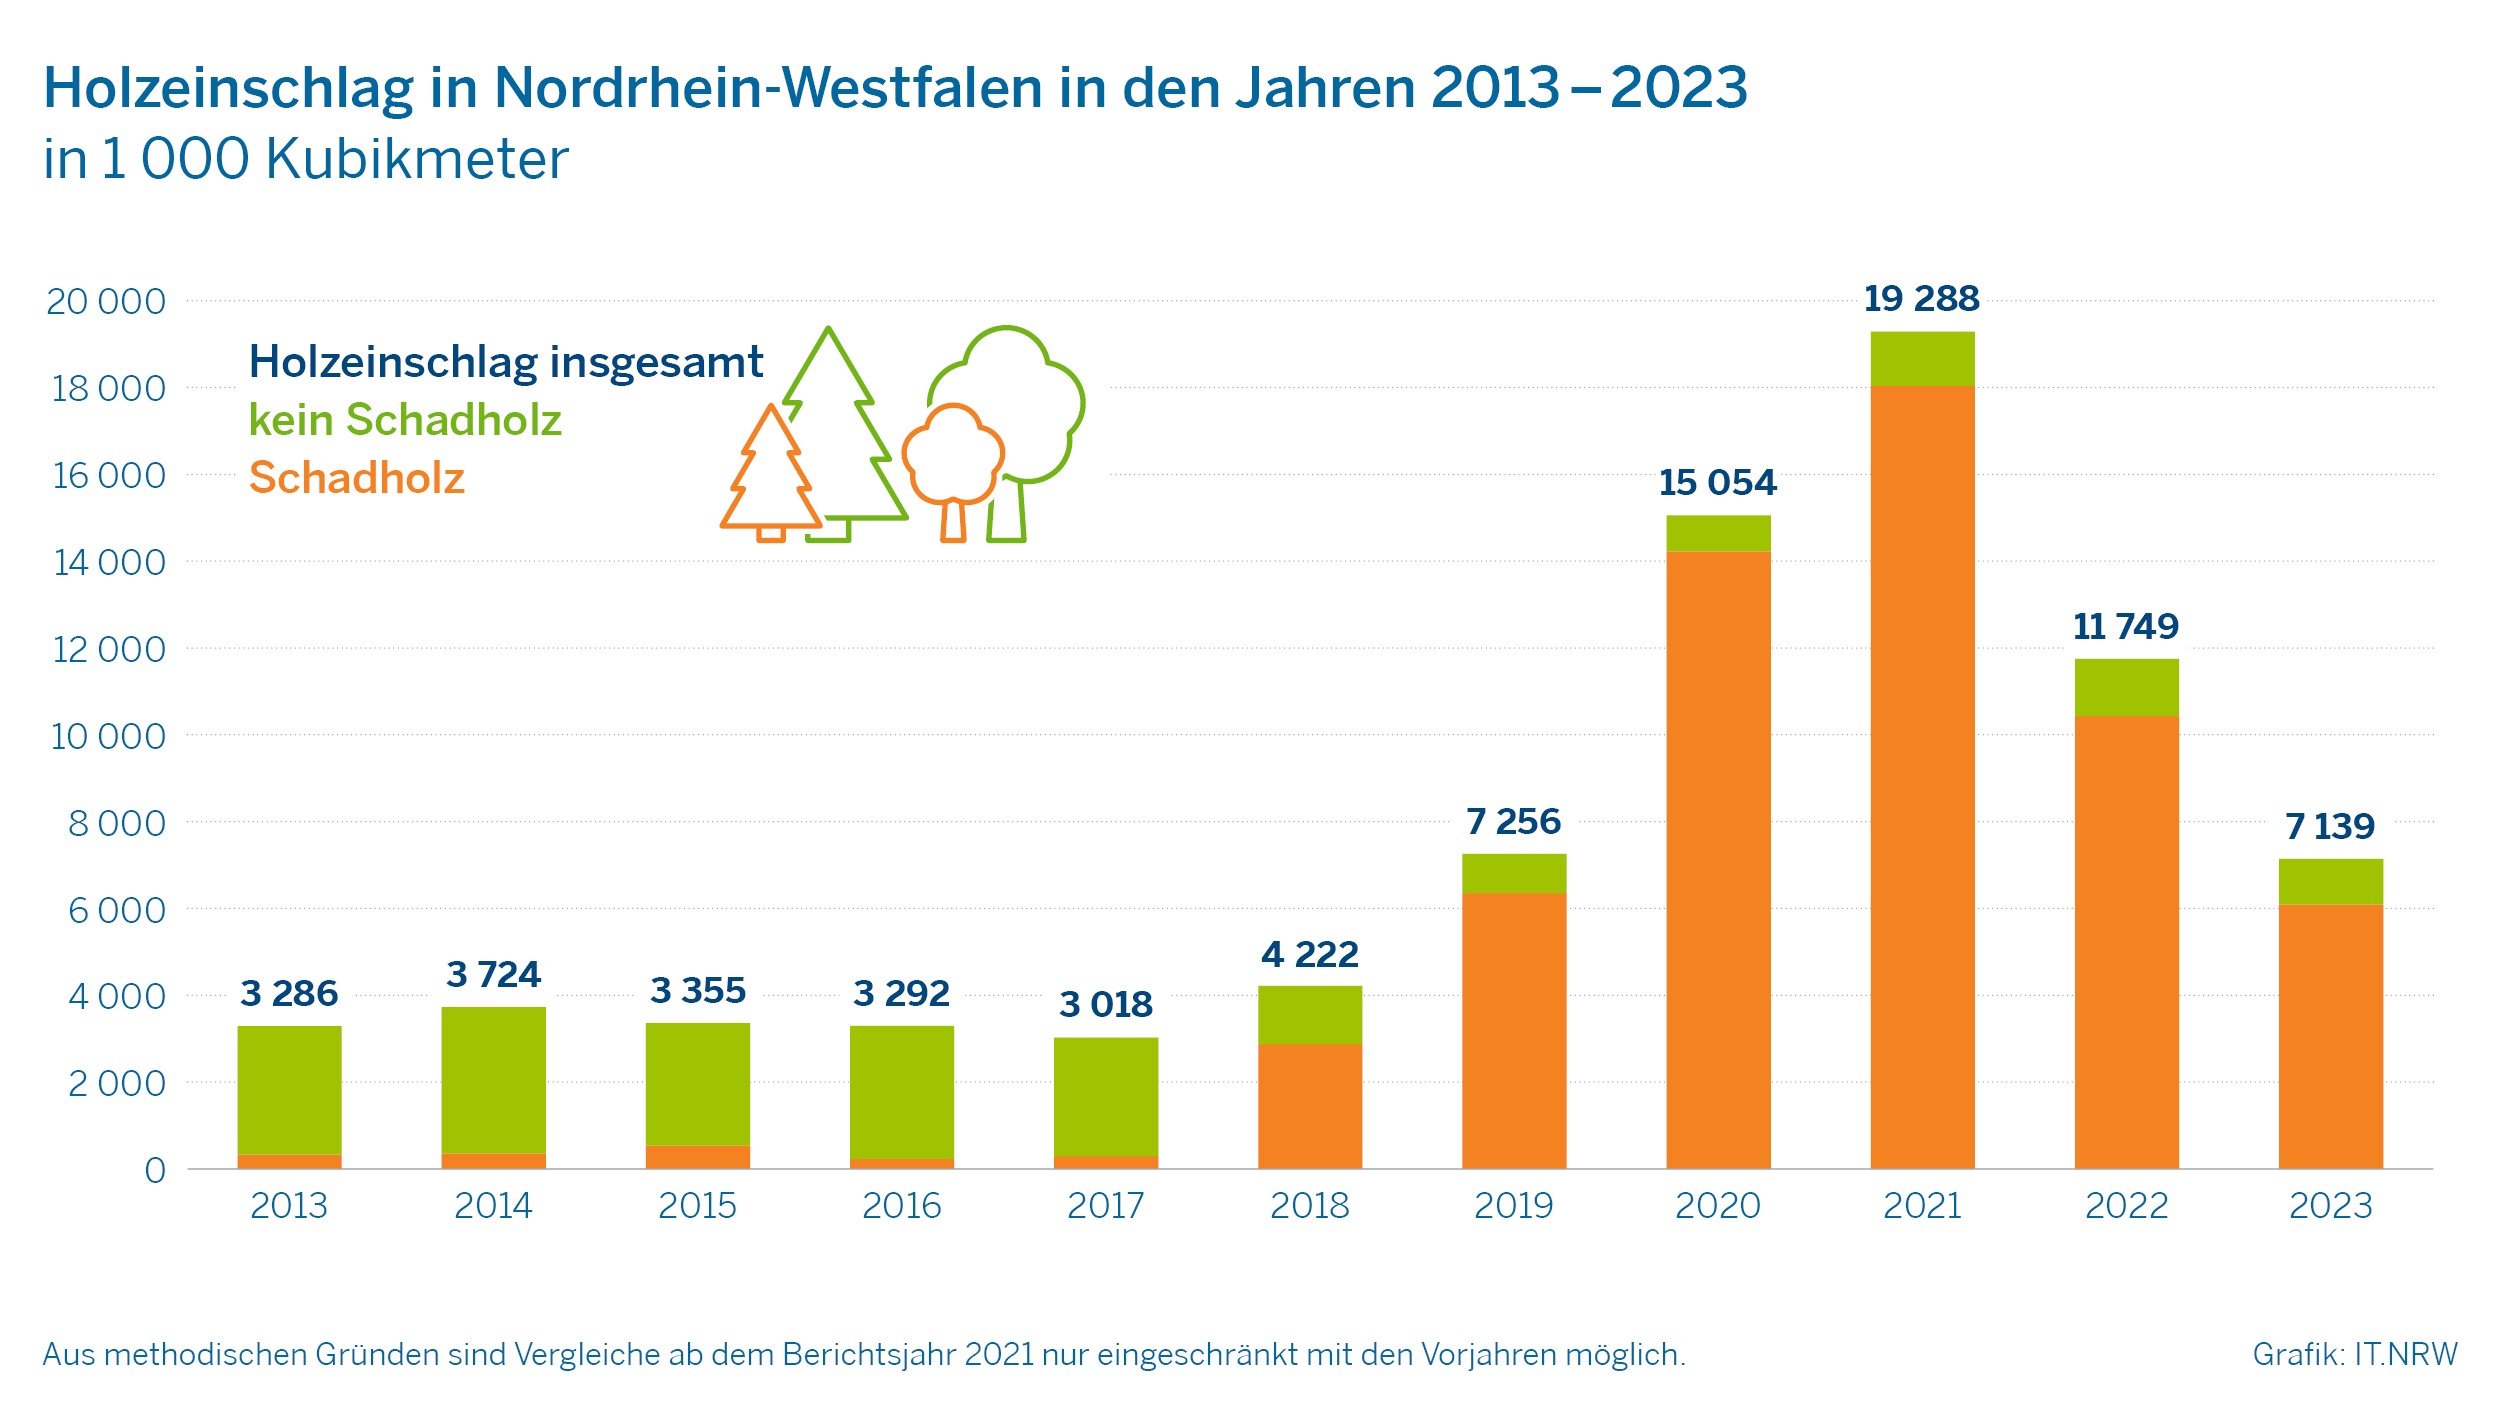 Holzeinschlag in Nordrhein-Westfalen in den Jahren 2013-2023